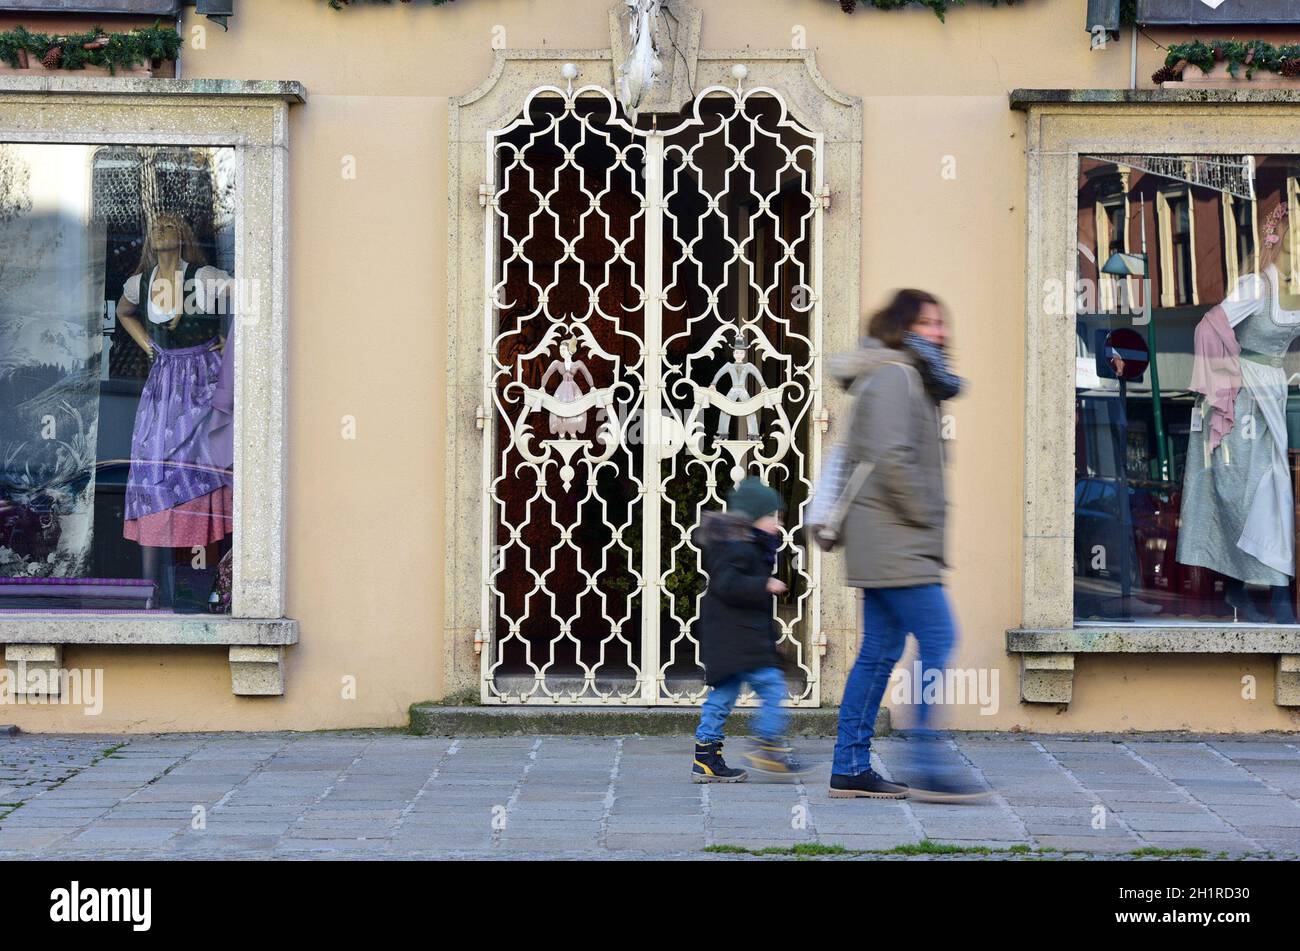 Lockdown in Österreich, geschlossenes Geschäft (Europa) - Lockdown in Austria, closed store (Europe) Stock Photo